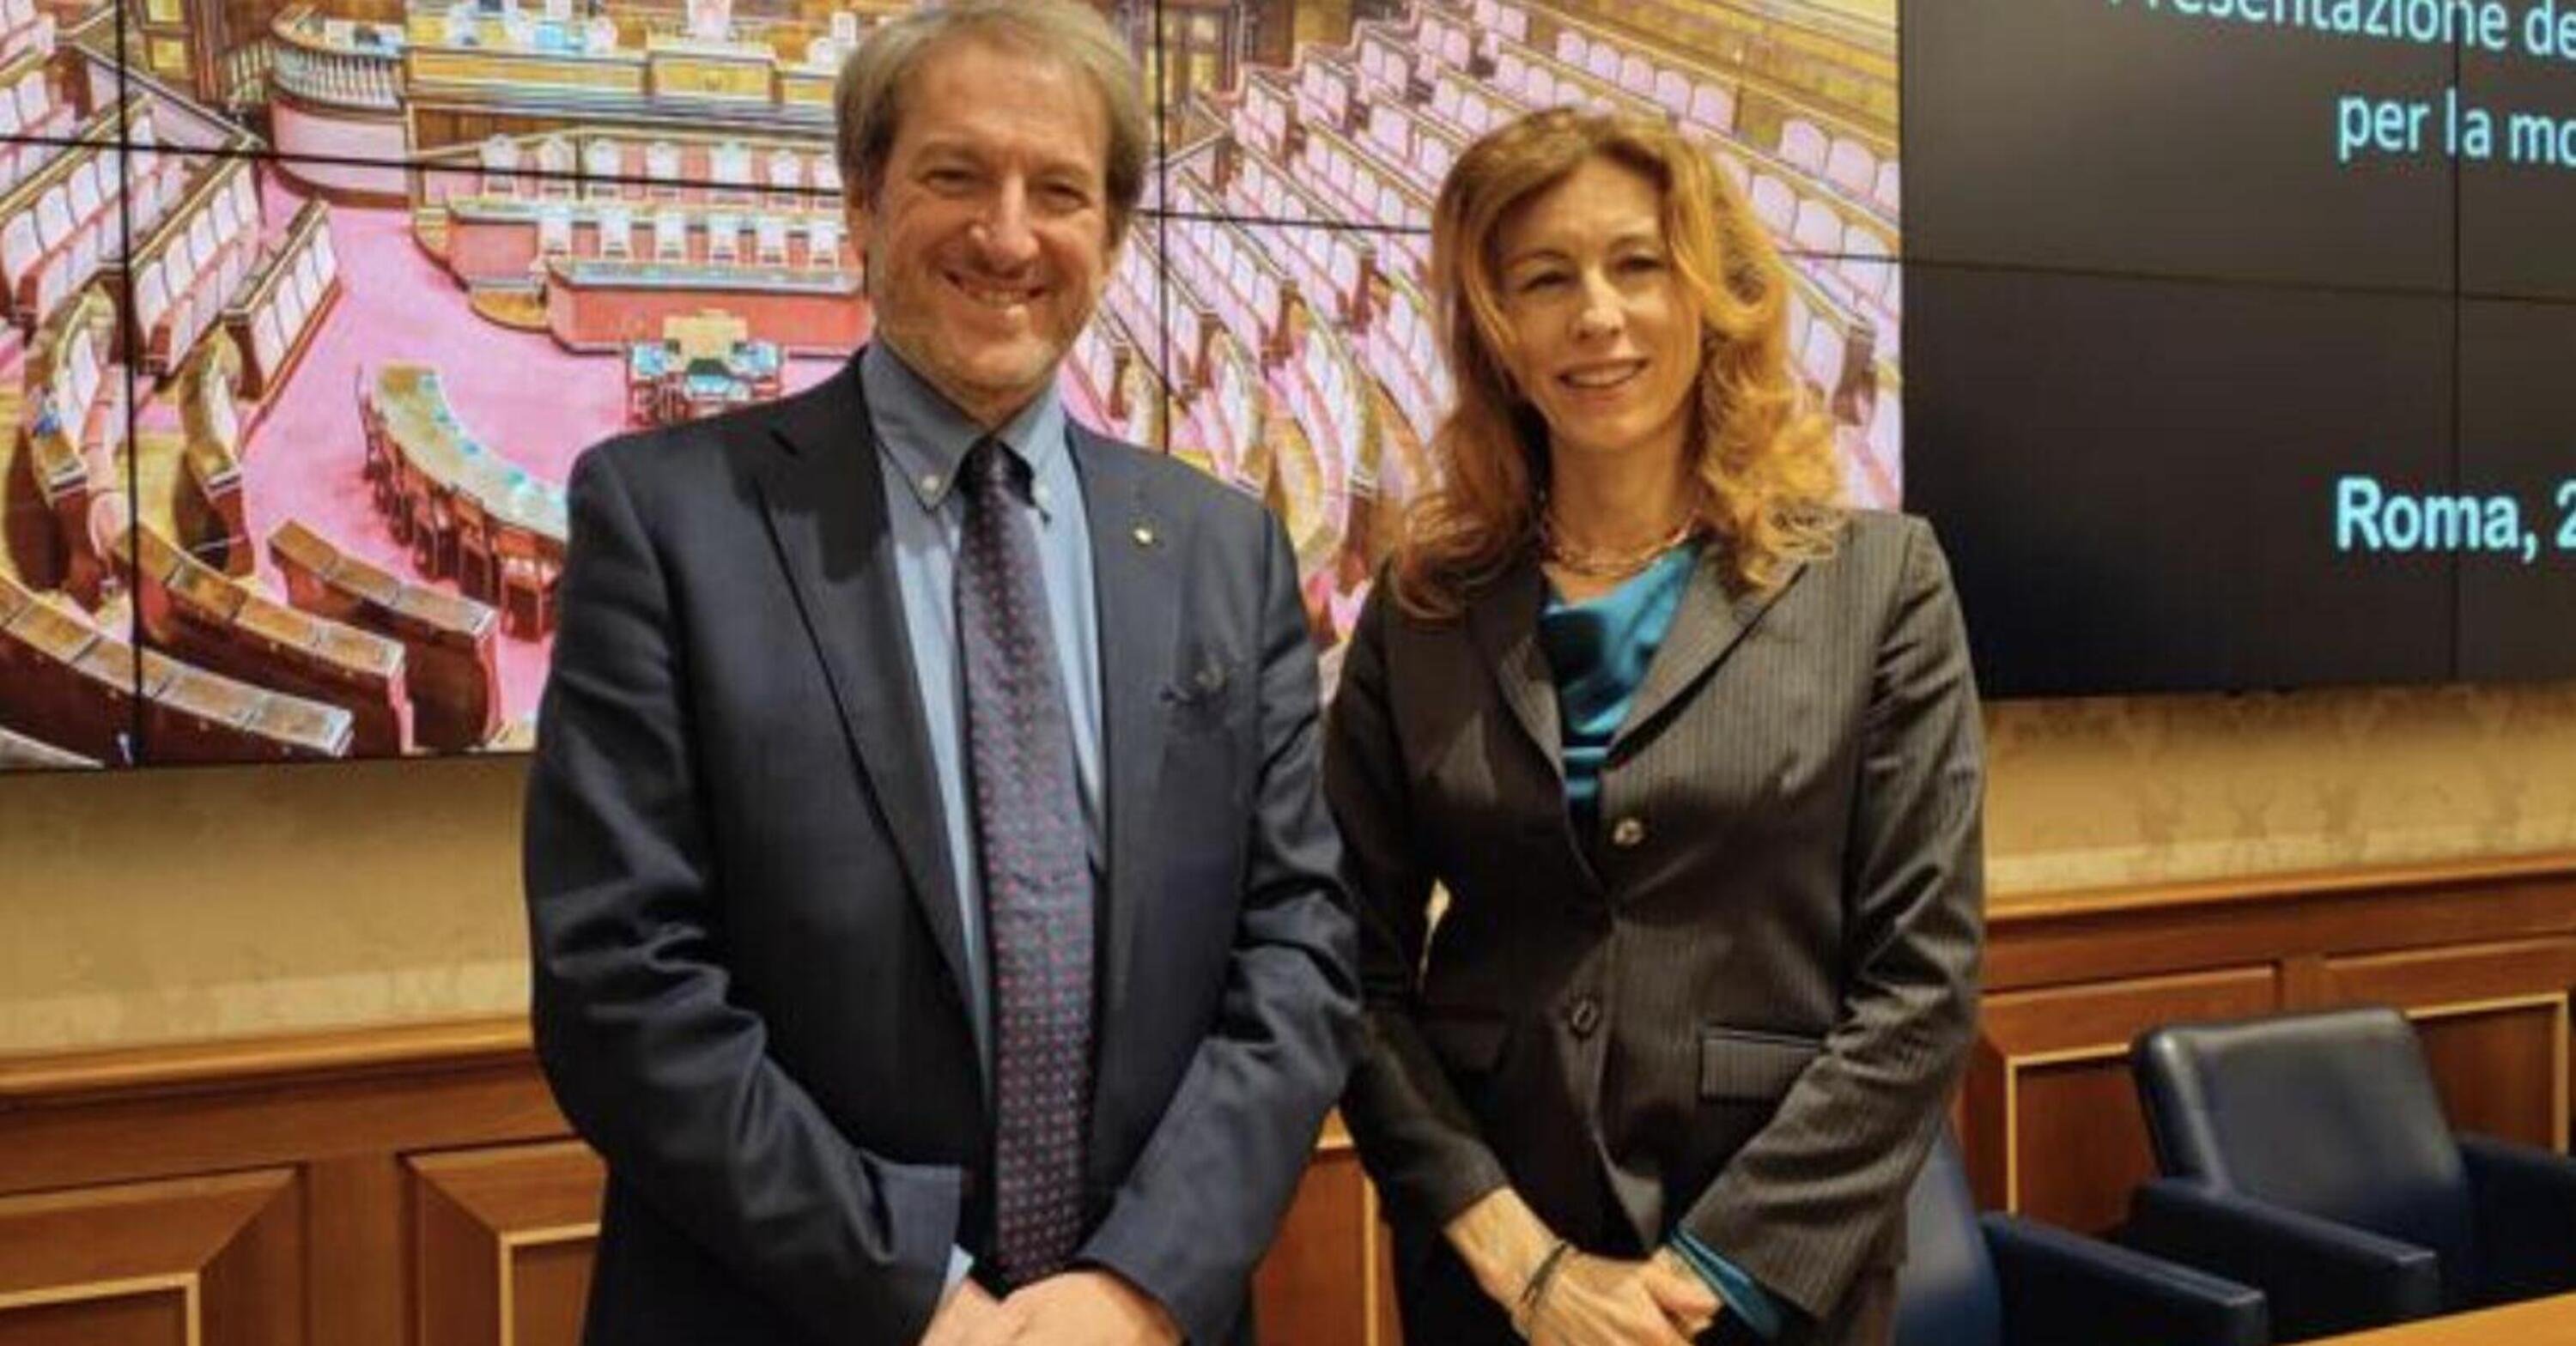 La senatrice Stefani e il presidente Copioli portano le moto (e la loro passione) in Parlamento. Sar&agrave; la volta buona?